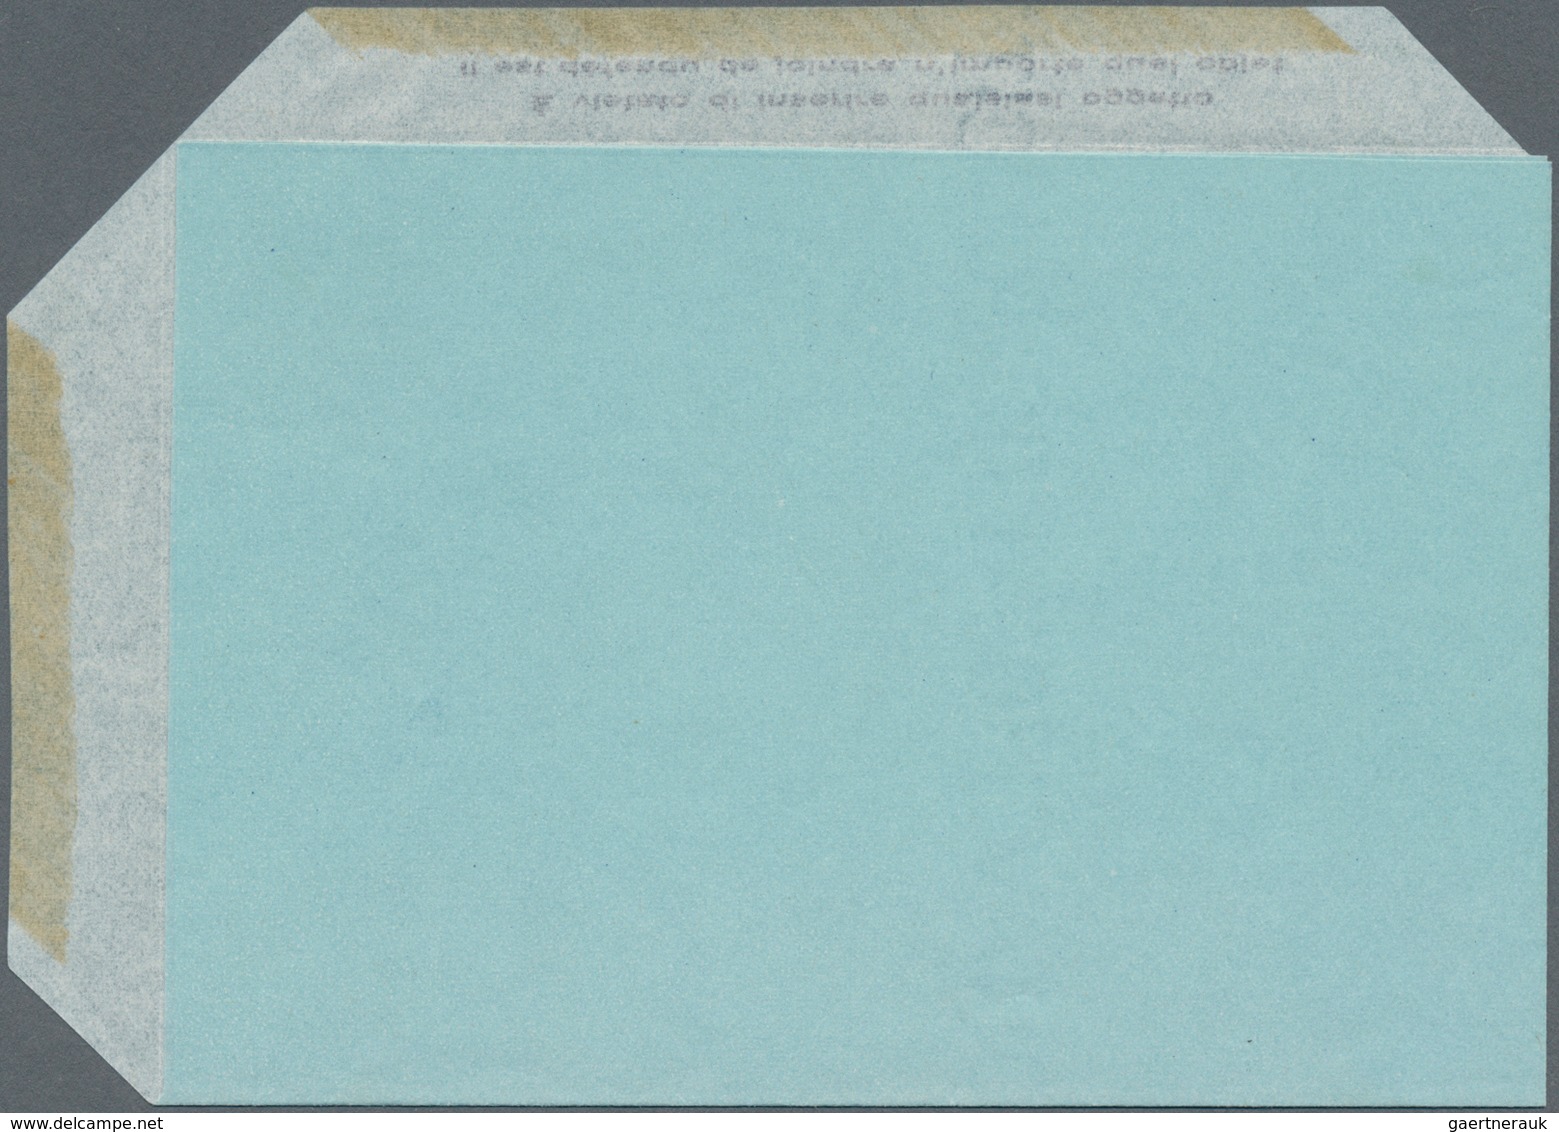 Vatikan - Ganzsachen: 1952, Airletter L. 80 "AEROGRAMMA" Blue, Unused, Two Varieties: (1) Missing In - Ganzsachen